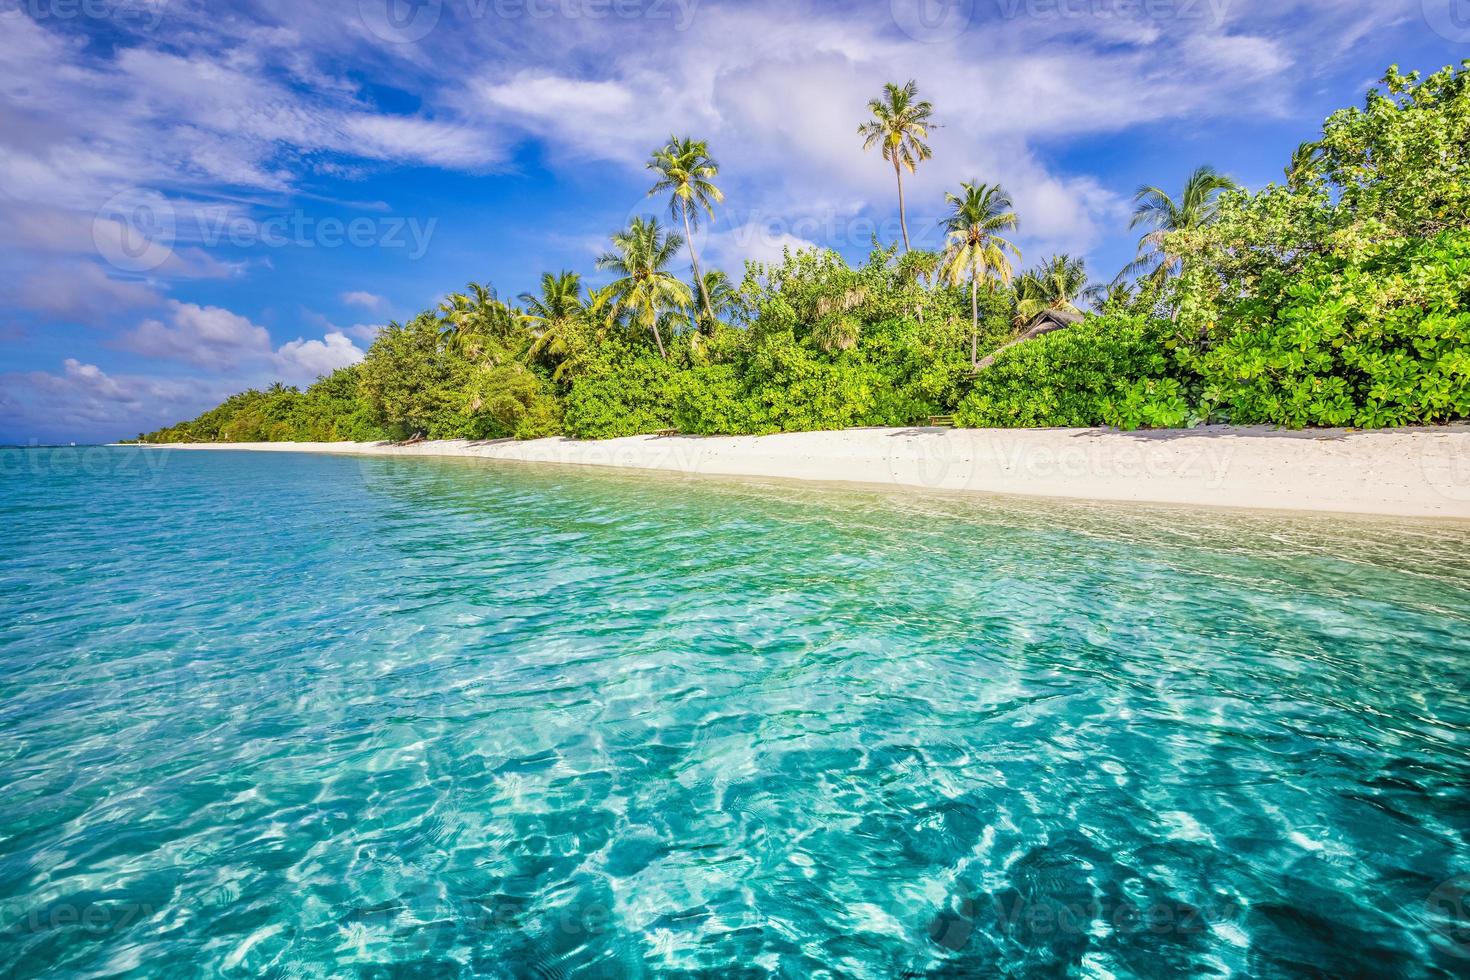 maldiverna öar hav tropisk strand. exotisk hav lagun, handflatan träd över vit sand. idyllisk natur landskap. Fantastisk strand naturskön Strand, ljus tropisk sommar Sol och blå himmel med ljus moln foto